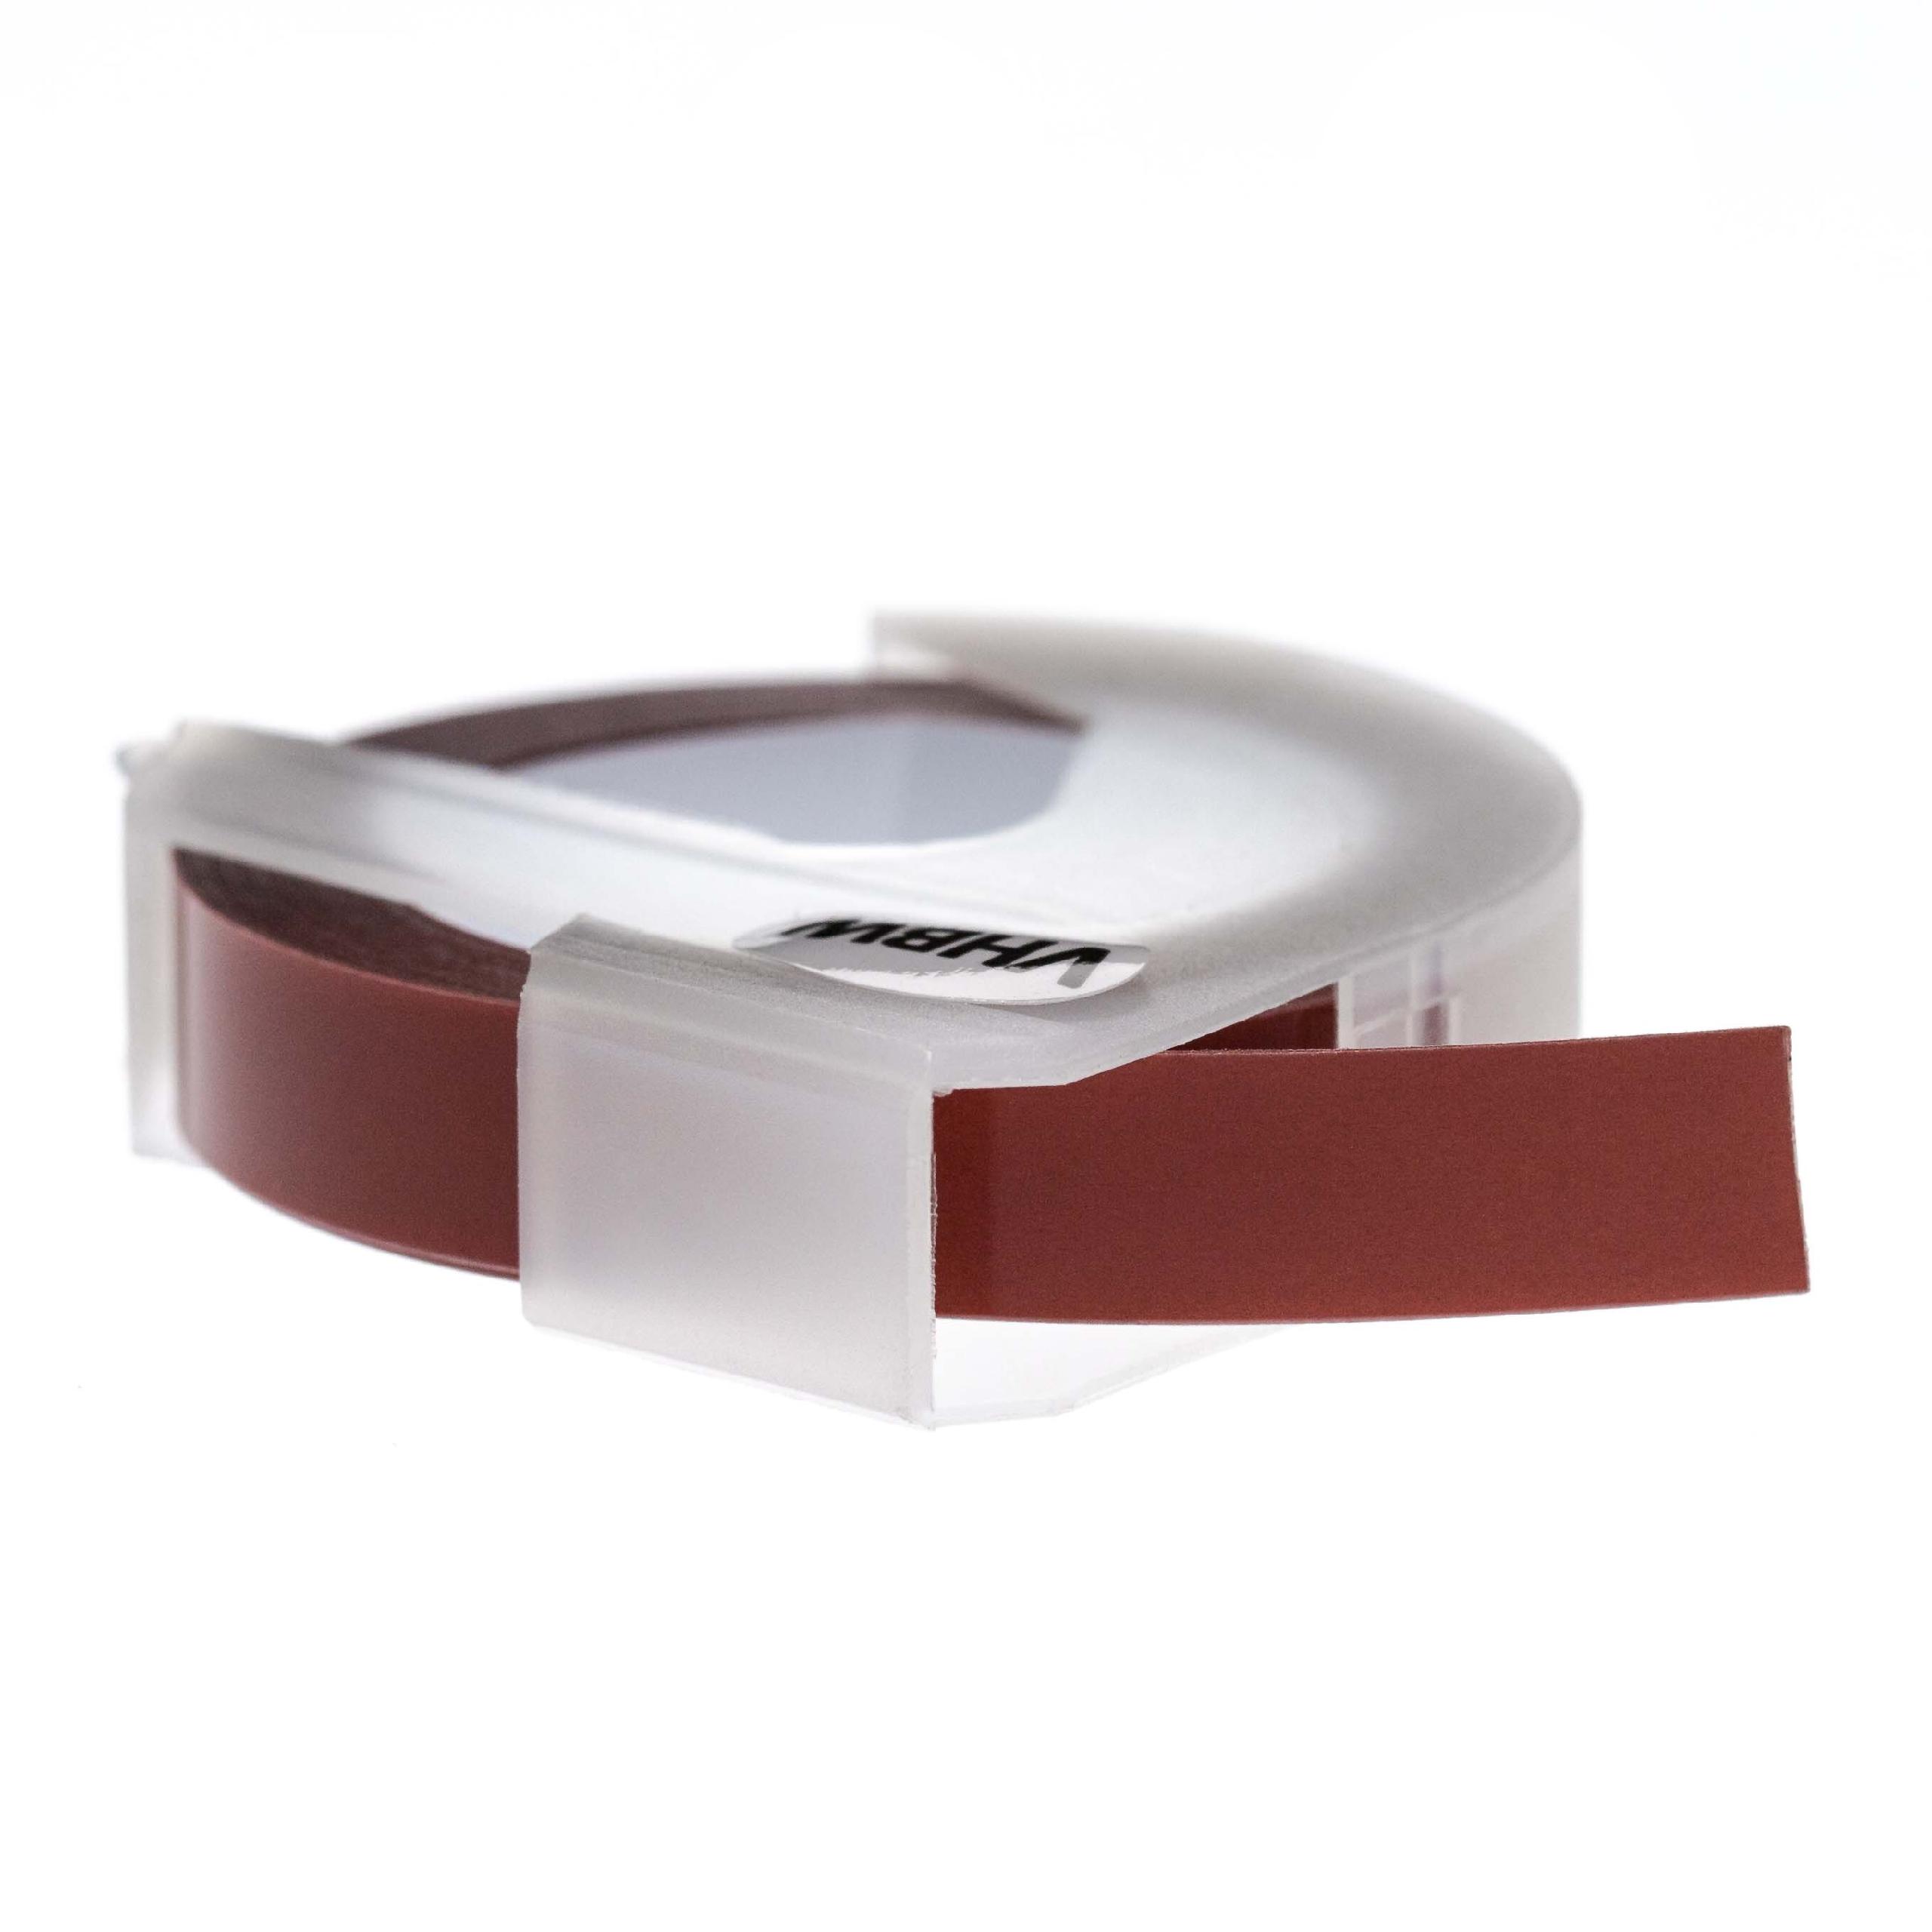 Cassette à ruban, gaufrage relief remplace Dymo 0898180, S0898180 - 9mm lettrage Blanc ruban Marron châtain